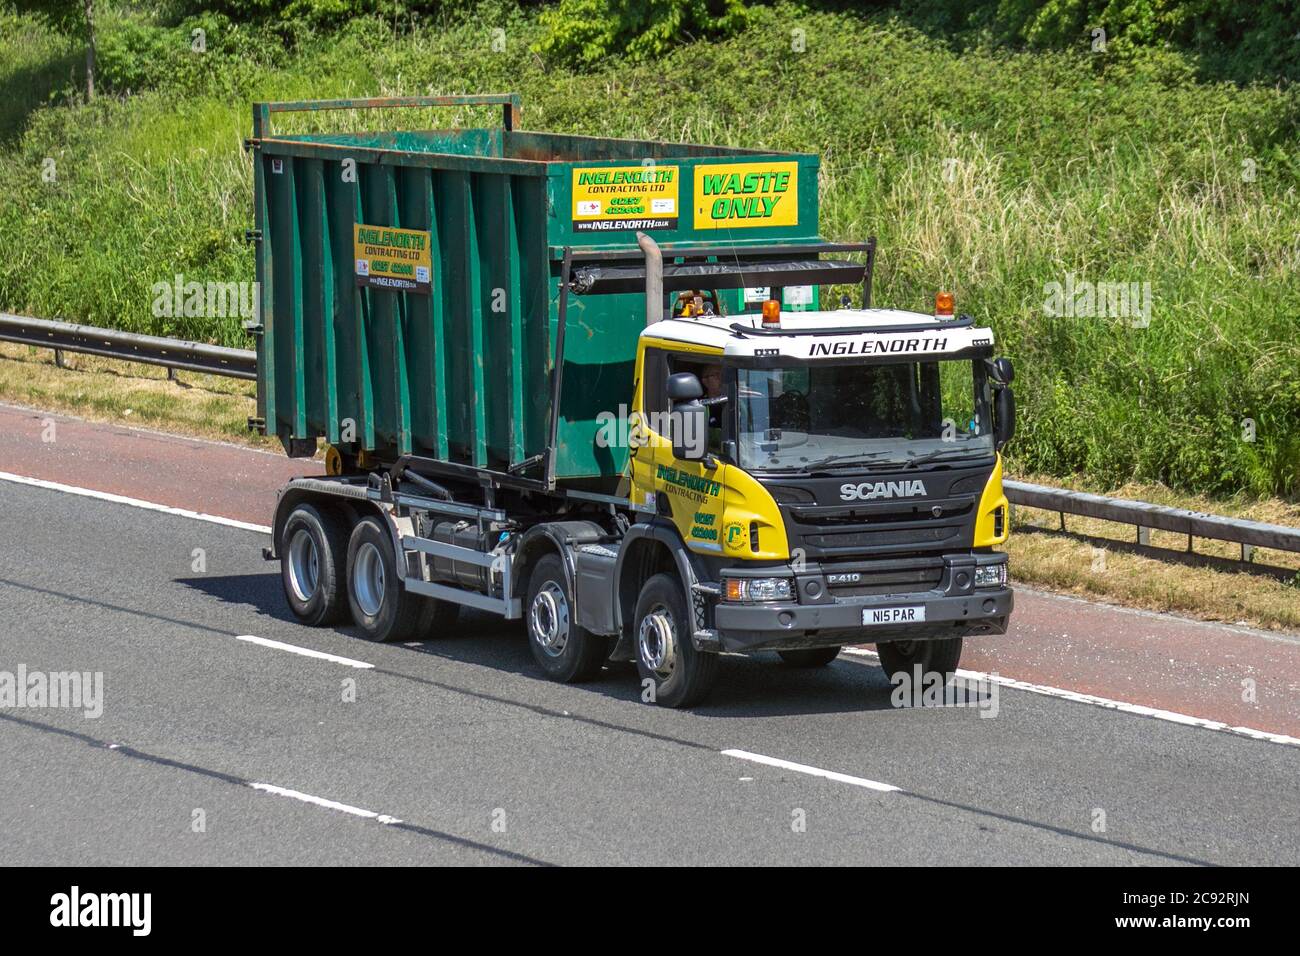 Inglenorth Contracting Ltd camiones de entrega de transporte, camiones de  solo residuos, transporte, camión rígido, transporte de carga, vehículo  Scania P410, industria europea de transporte comercial HGV, M6 en  Manchester, Reino Unido